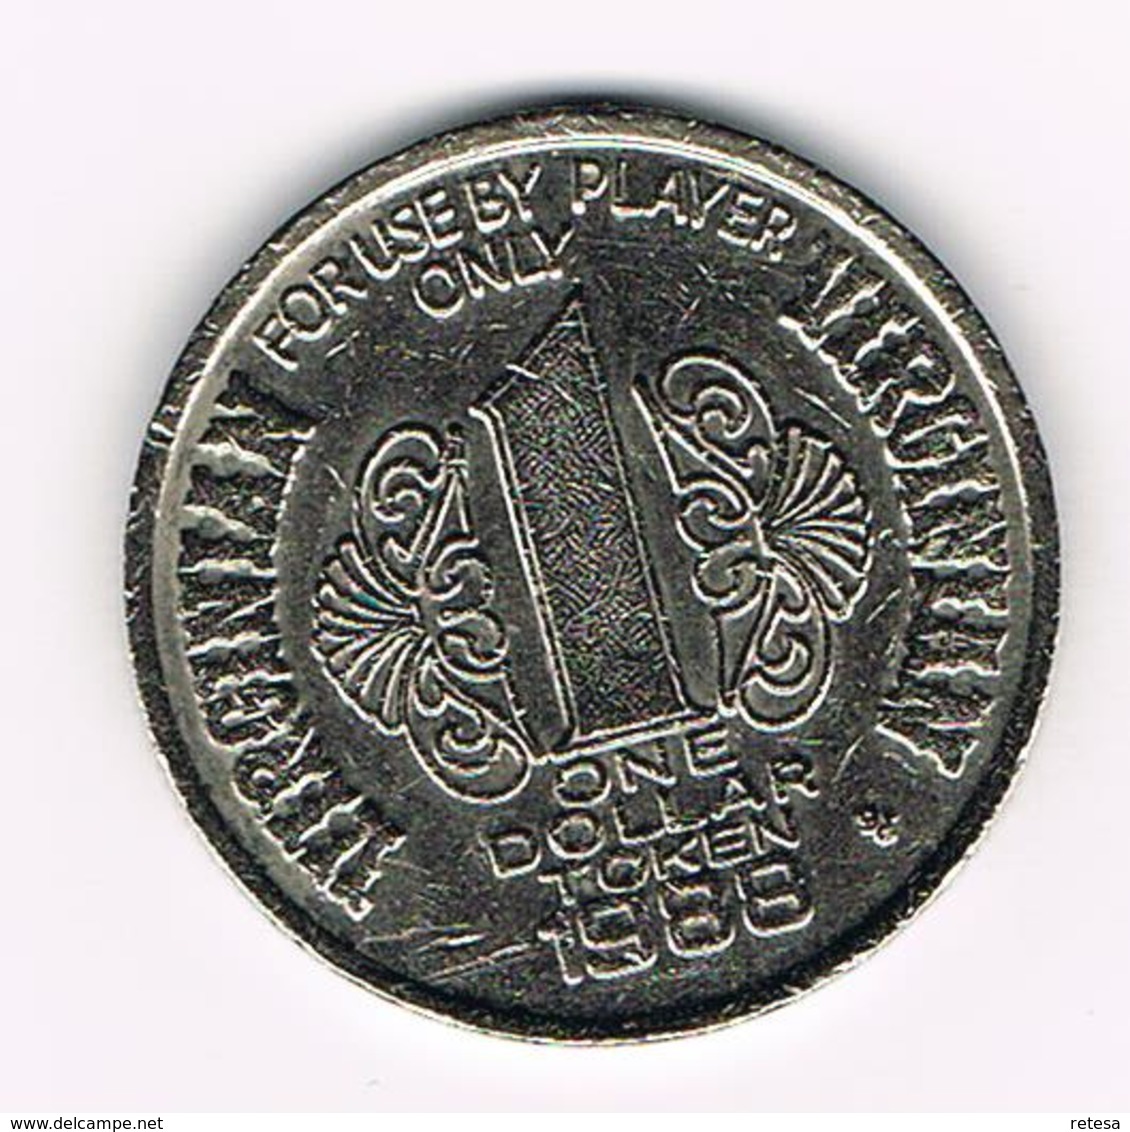 &-  VIRGINIAN  1 DOLLAR TOKEN HOTEL CASINO RENO 1988 - Souvenirmunten (elongated Coins)